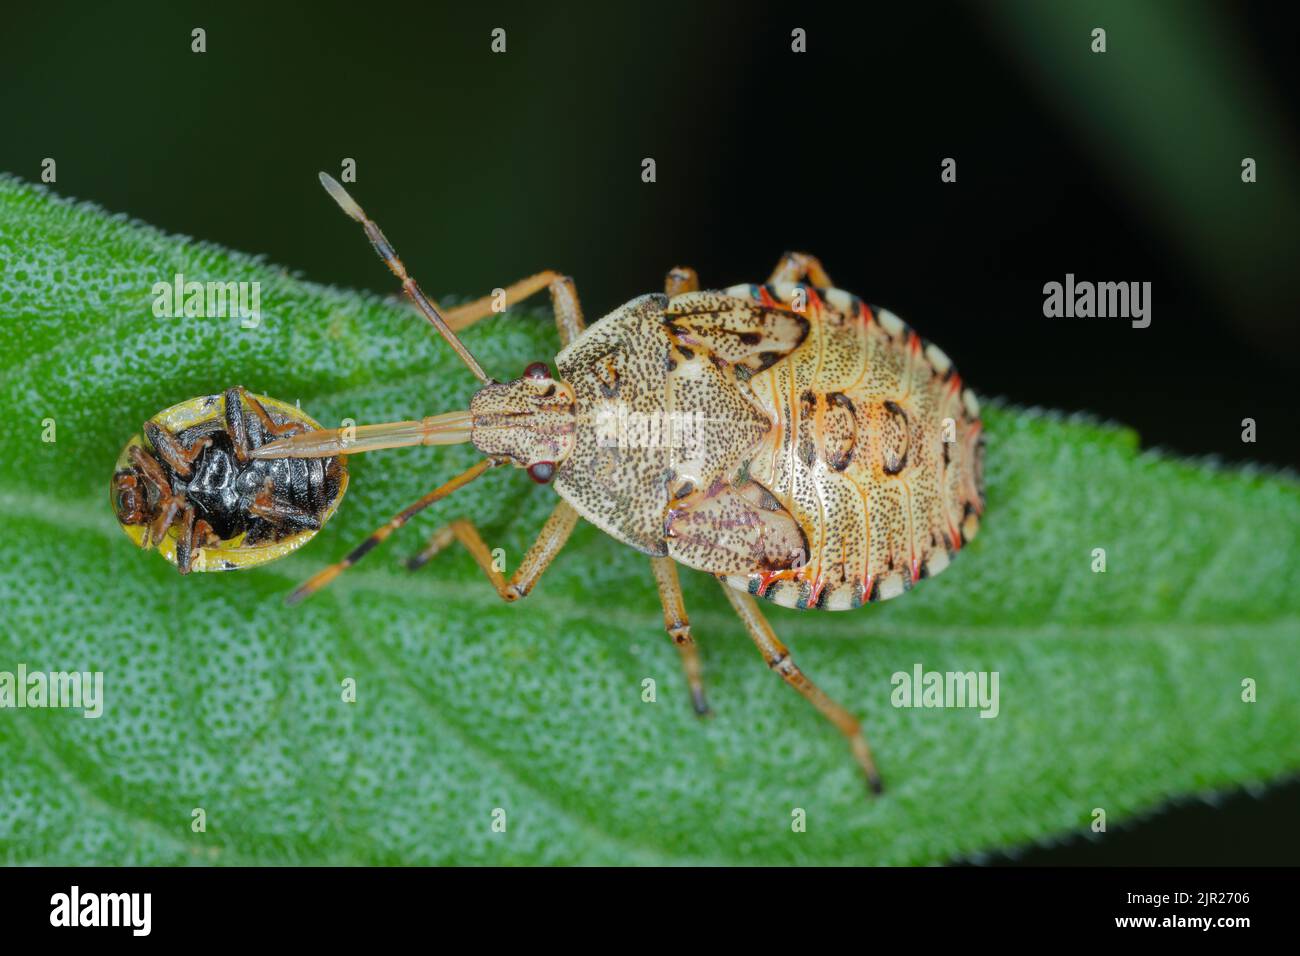 Nymphe, la larve d'un insecte de la famille des Pentatomidae (insecte bouclier) avec un coccinelle. Banque D'Images